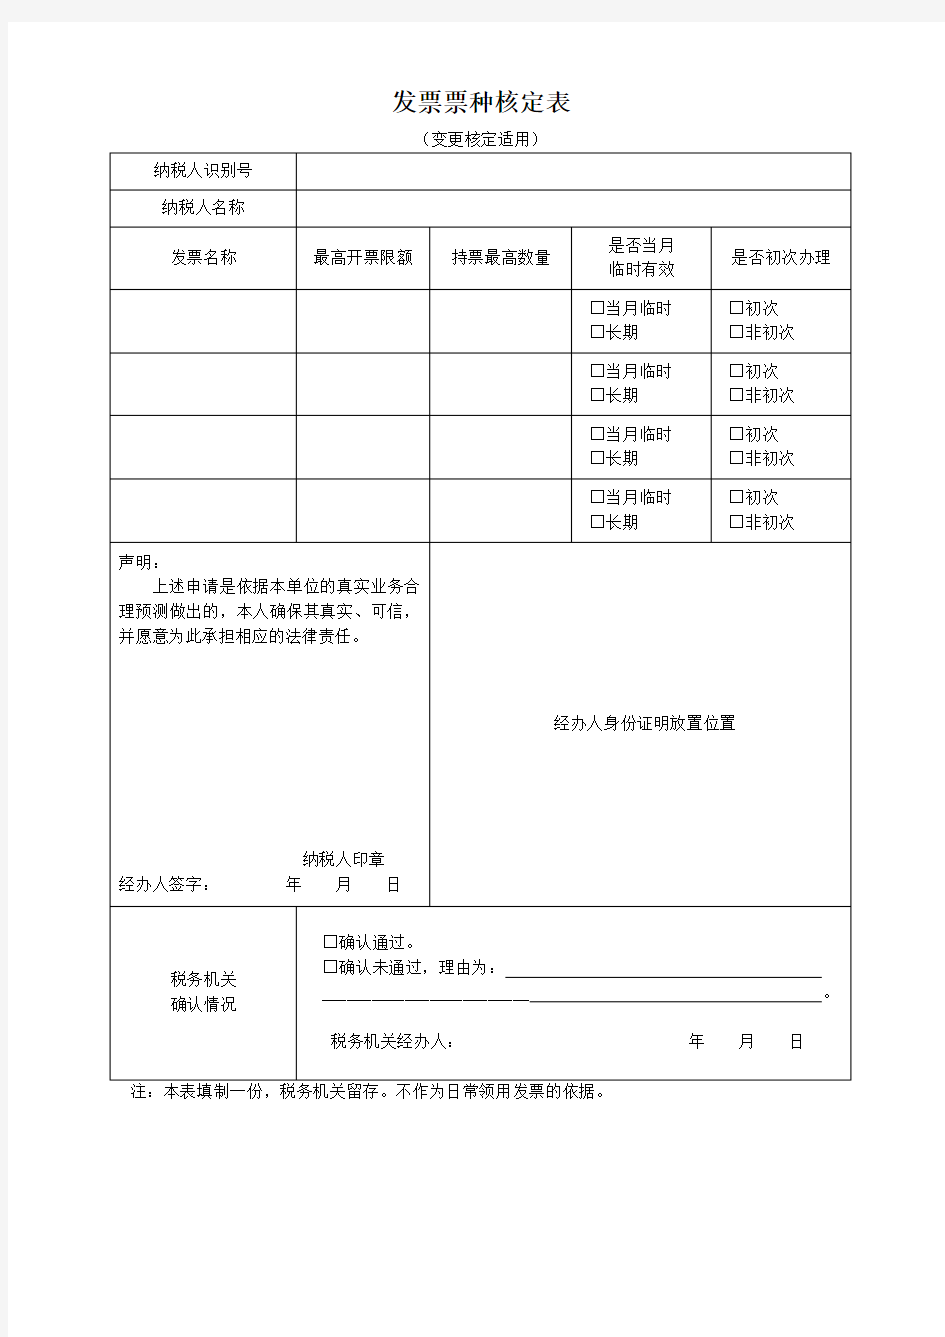 发票票种核定表 - 北京市国家税务局